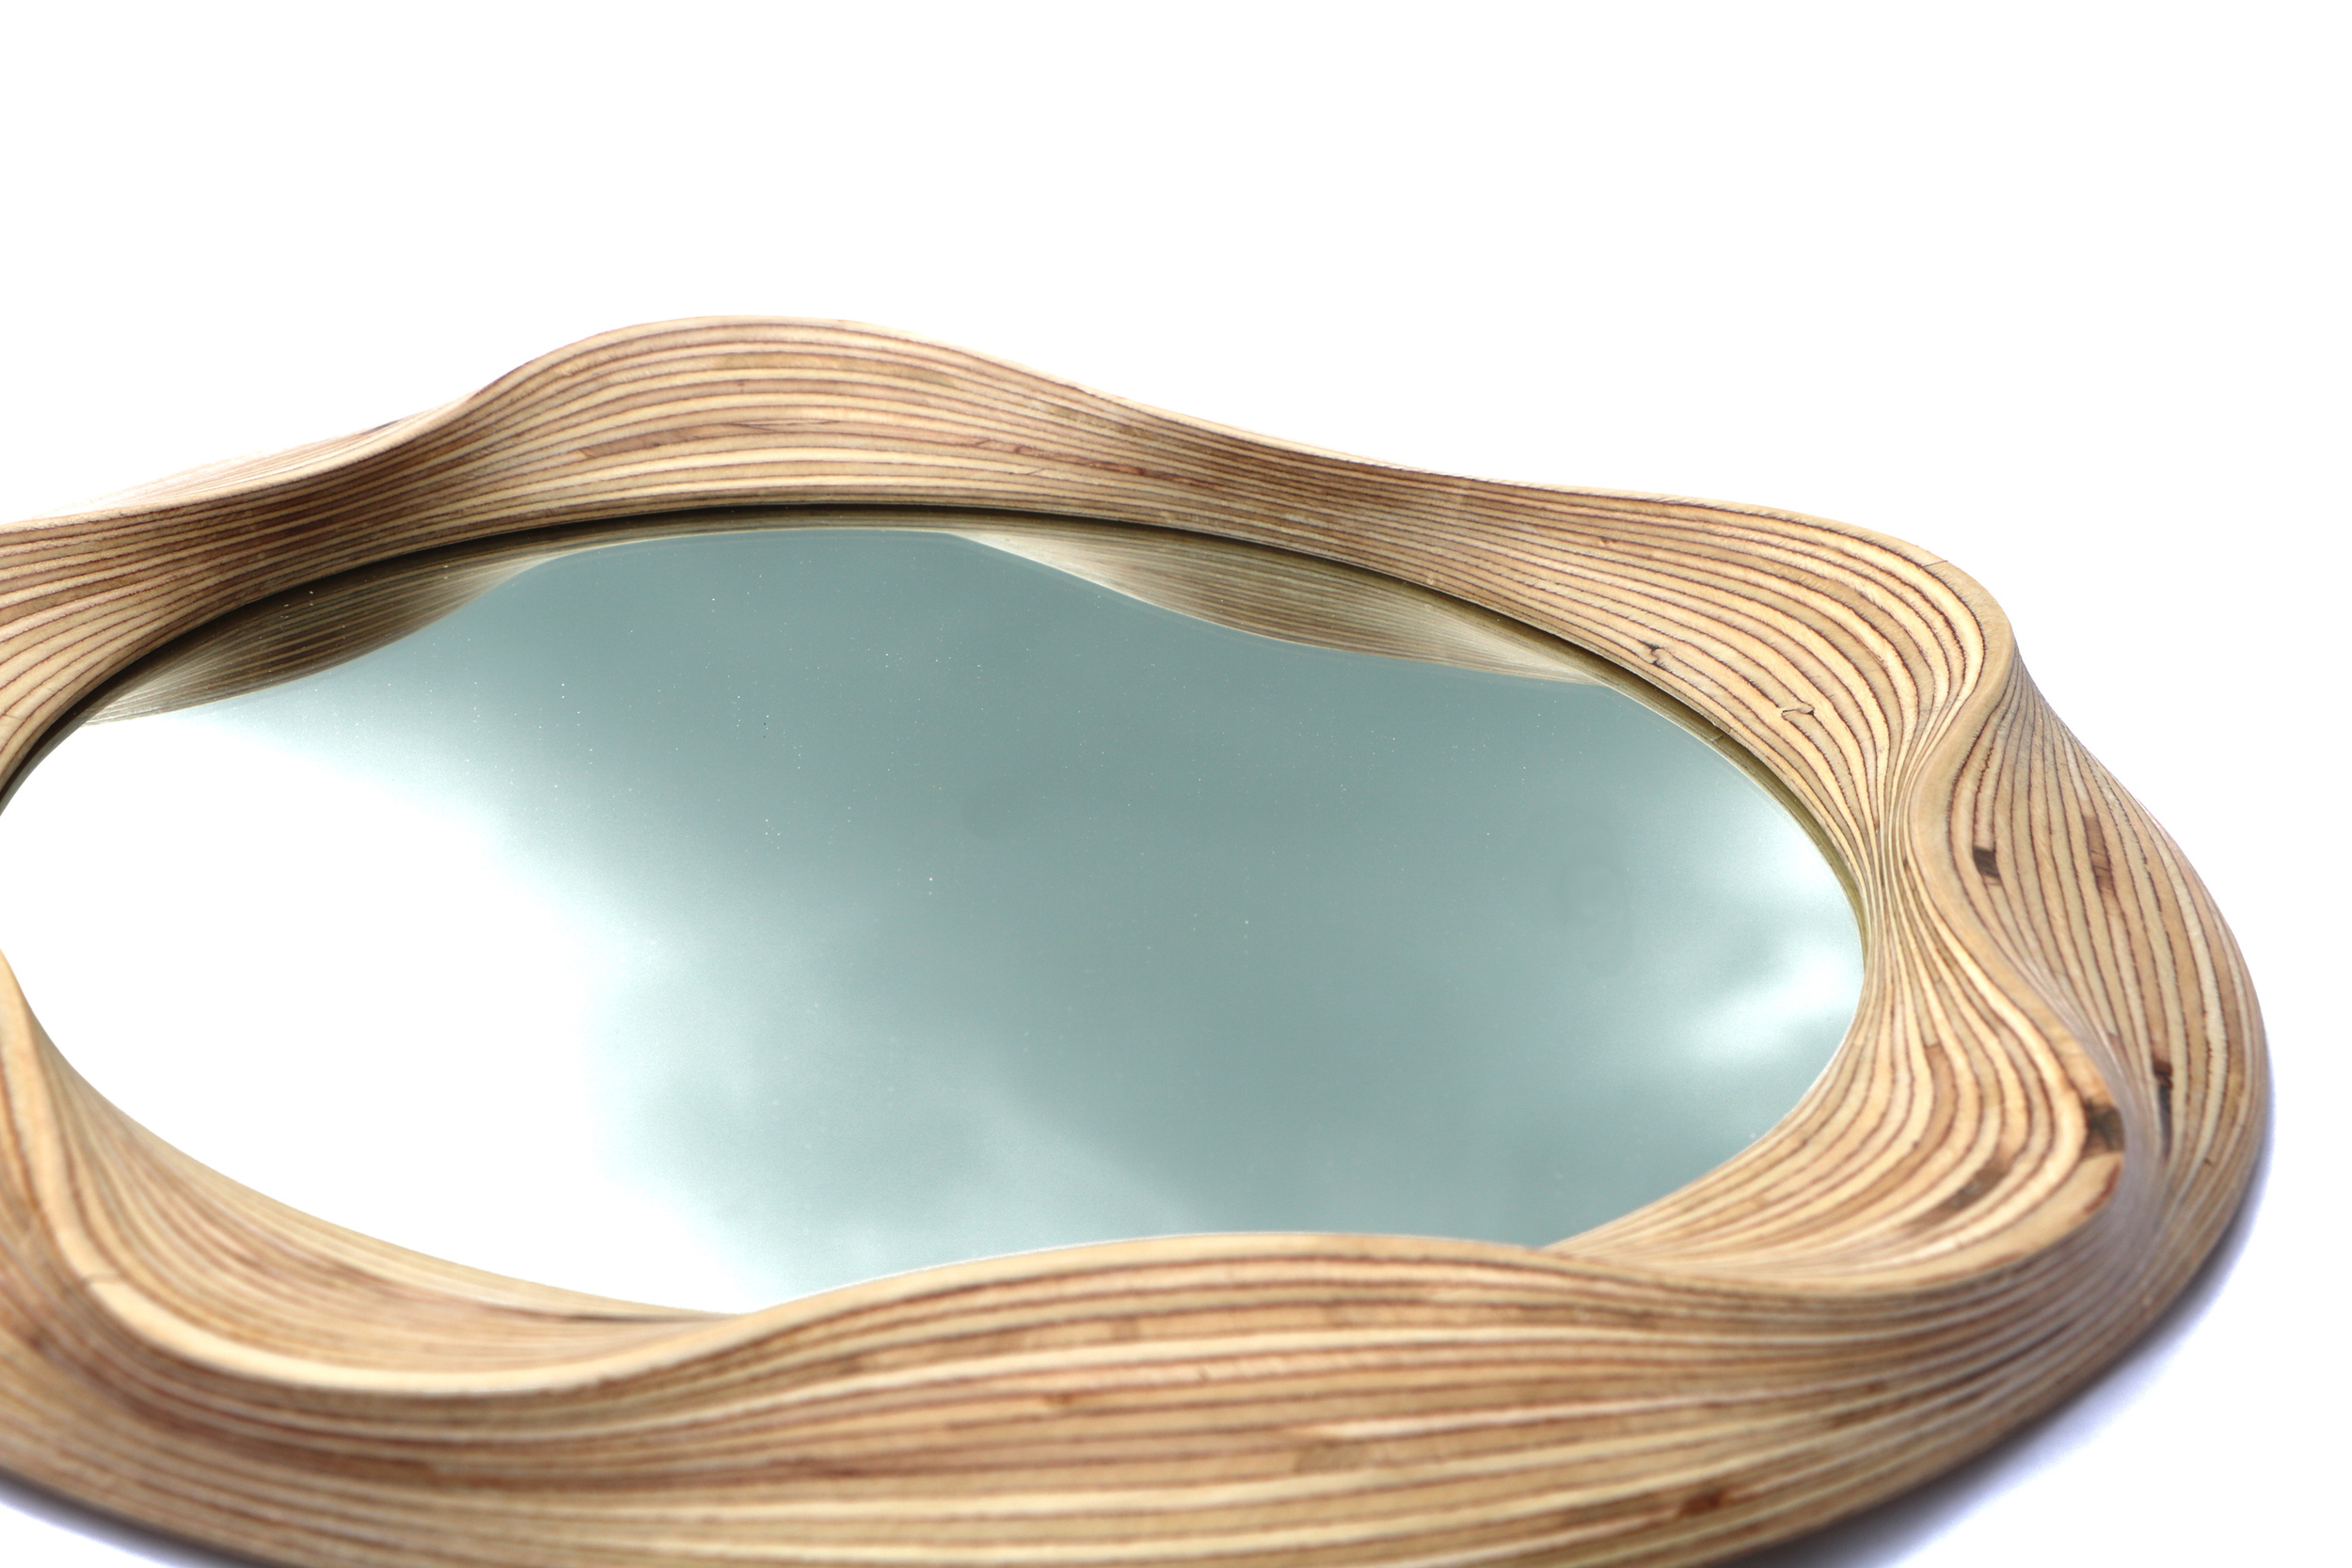 Contemporary round wooden mirror frame